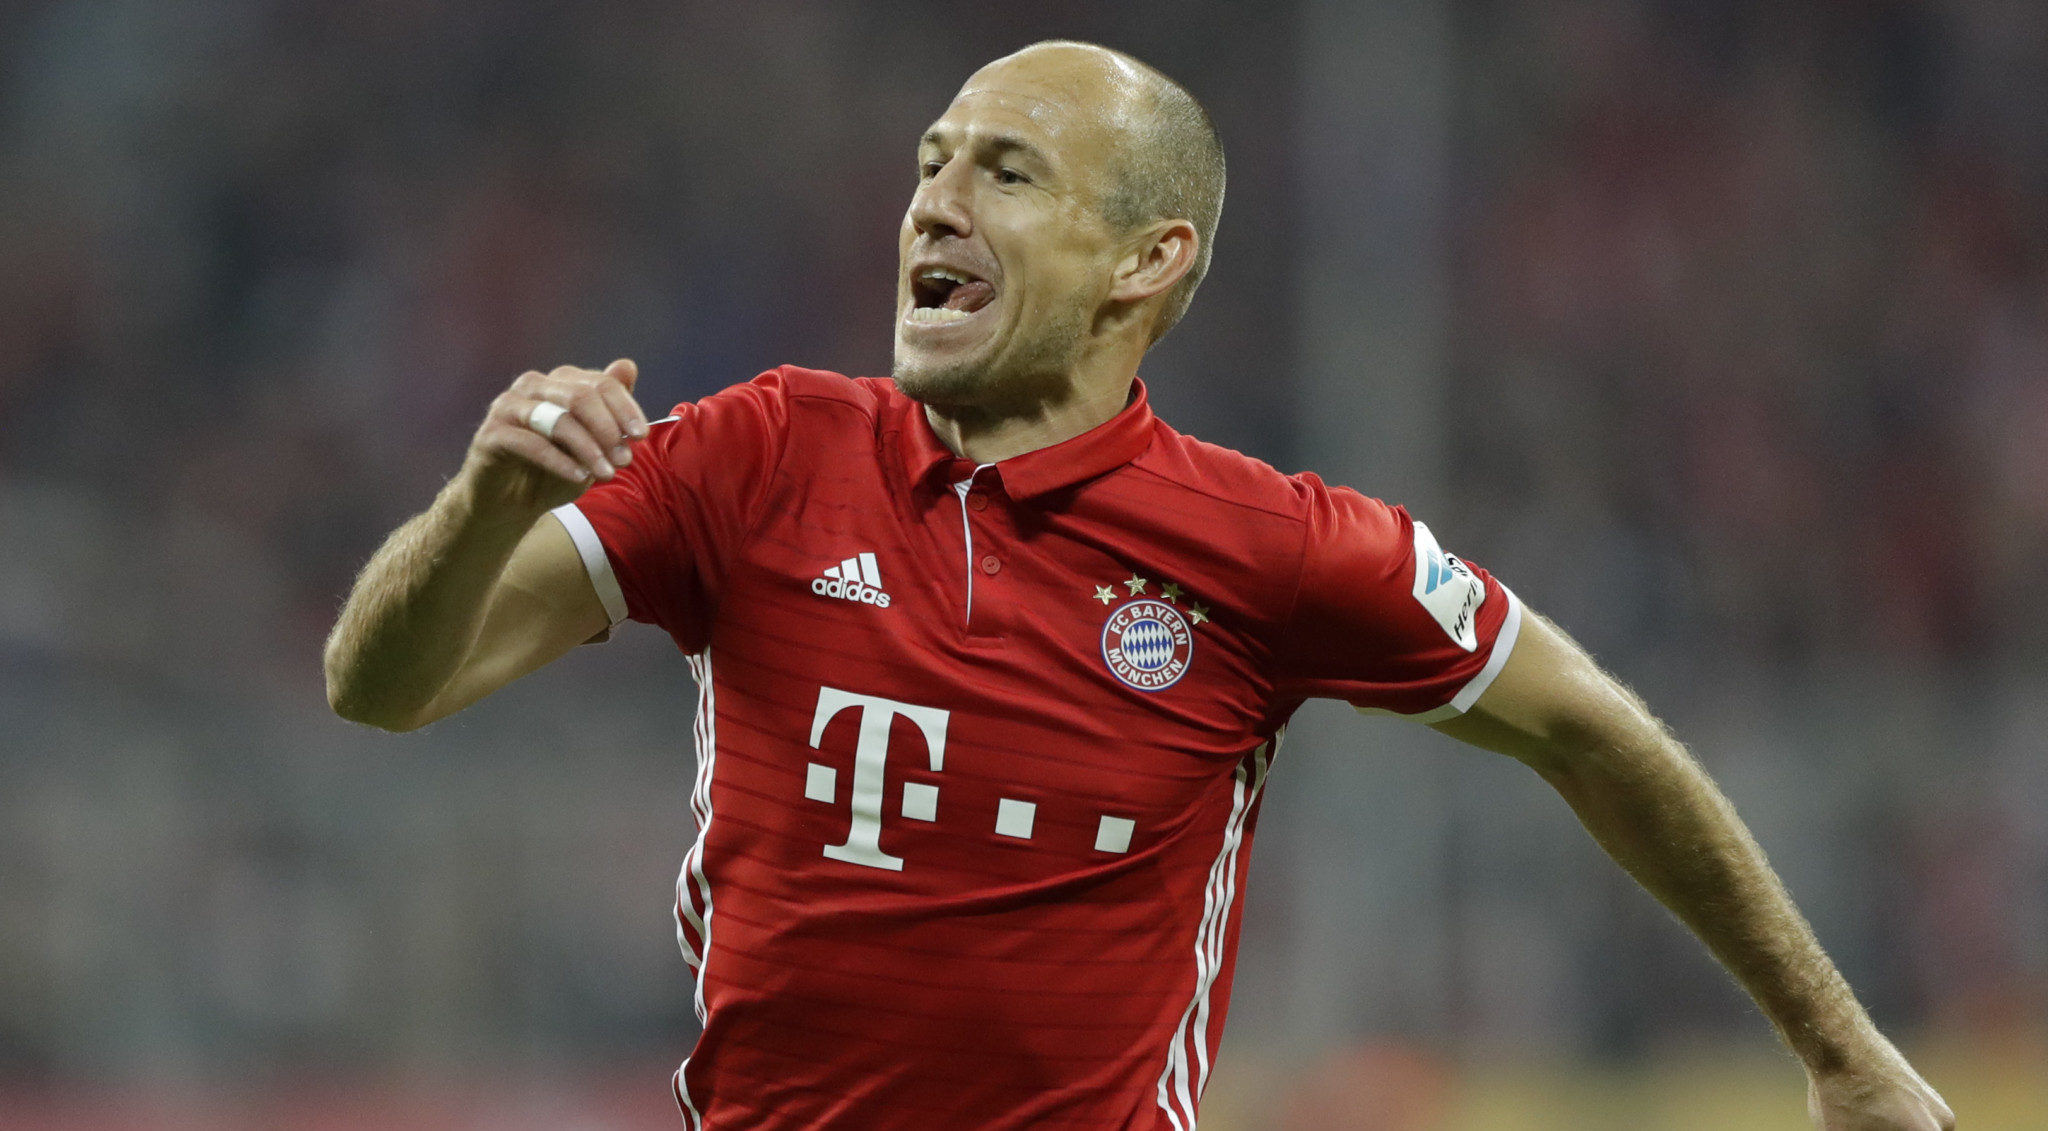 Gran retorno de Robben y el Bayern comienza a imponer condiciones en la Bundesliga